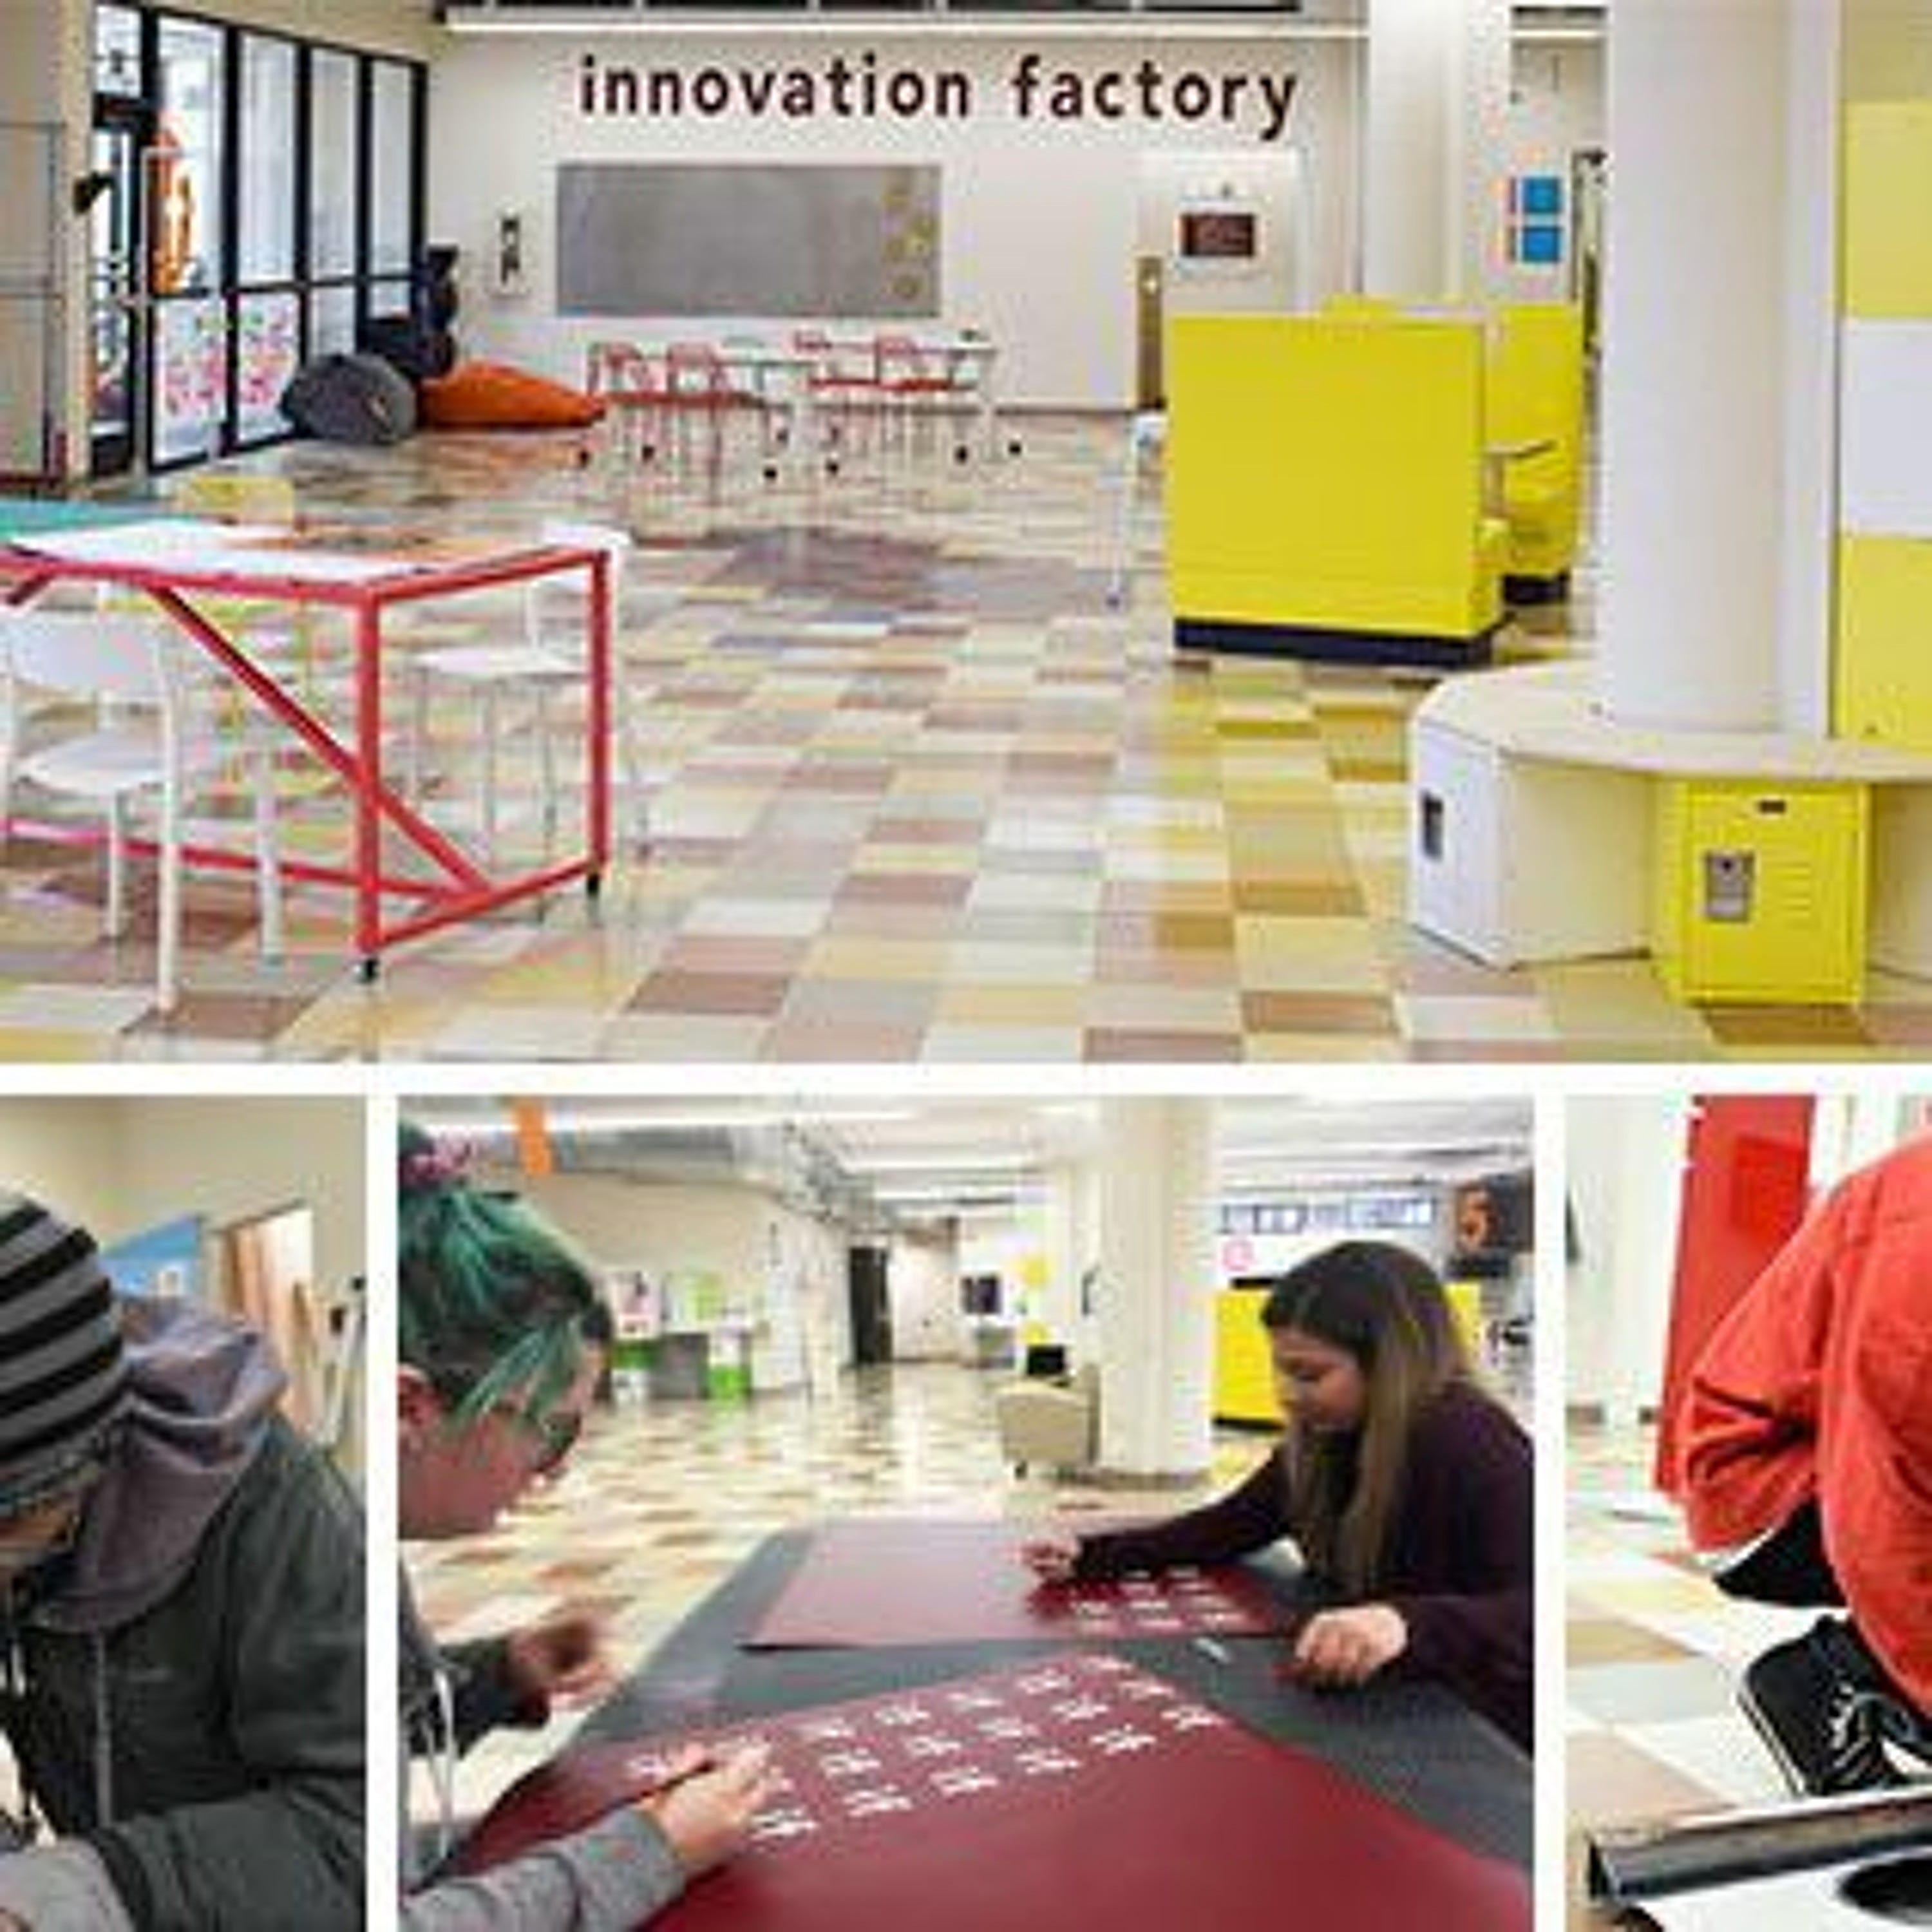 The Innovation Factory - can we teach creativity?